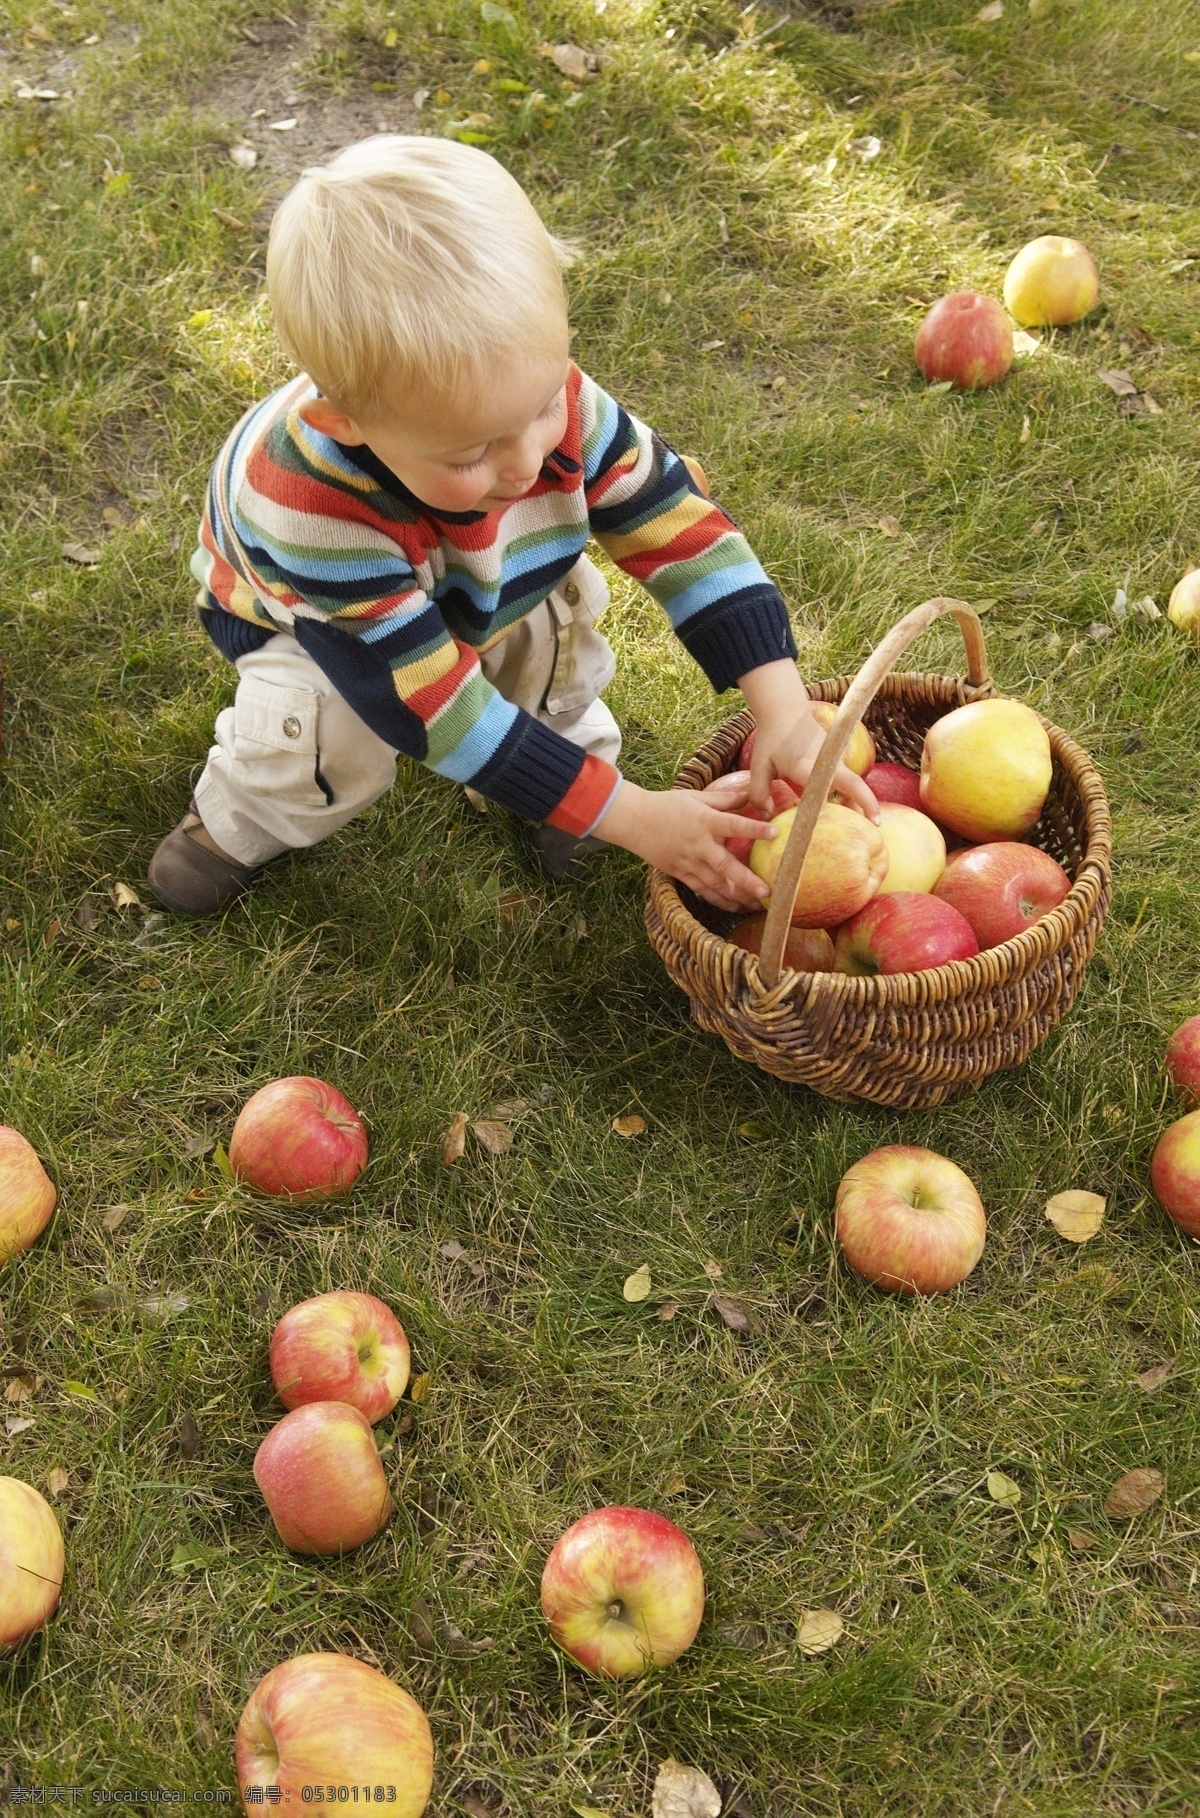 苹果 儿童 草地 苹果摄影 苹果素材 水果 儿童摄影 小孩 儿童图片 人物图片